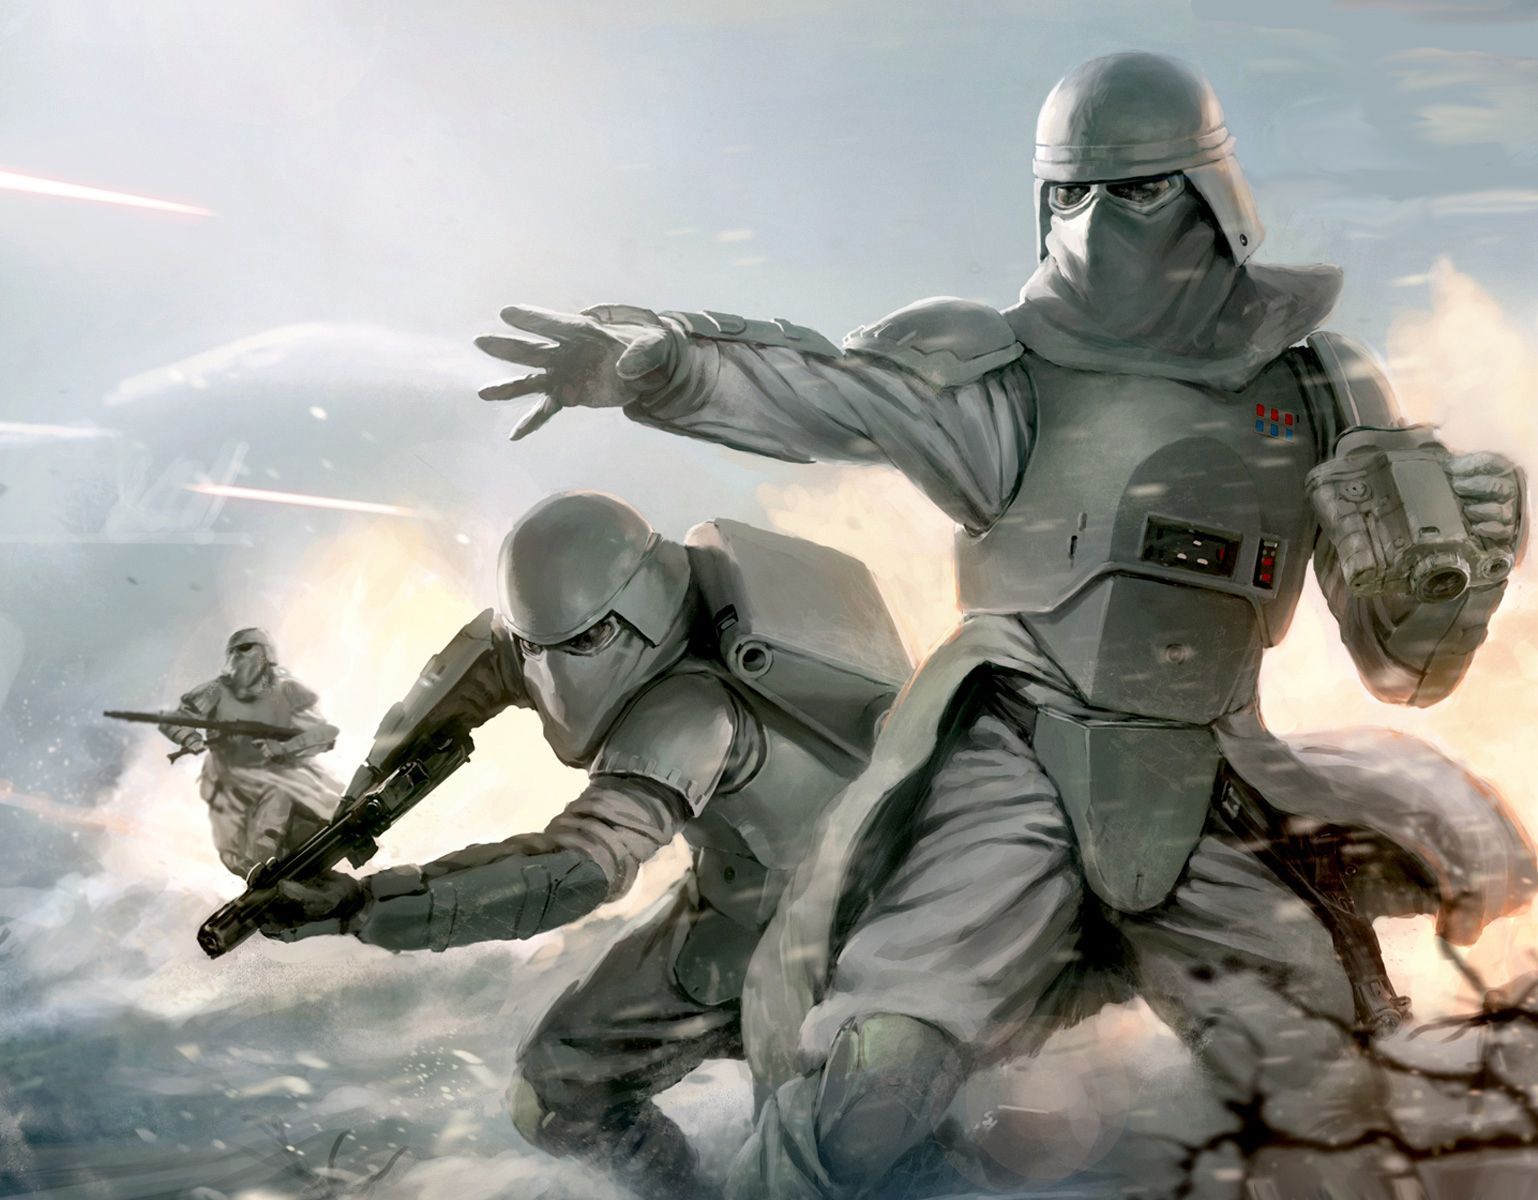 Stormtrooper Corps. Star wars art, Star wars wallpaper, Star wars fan art